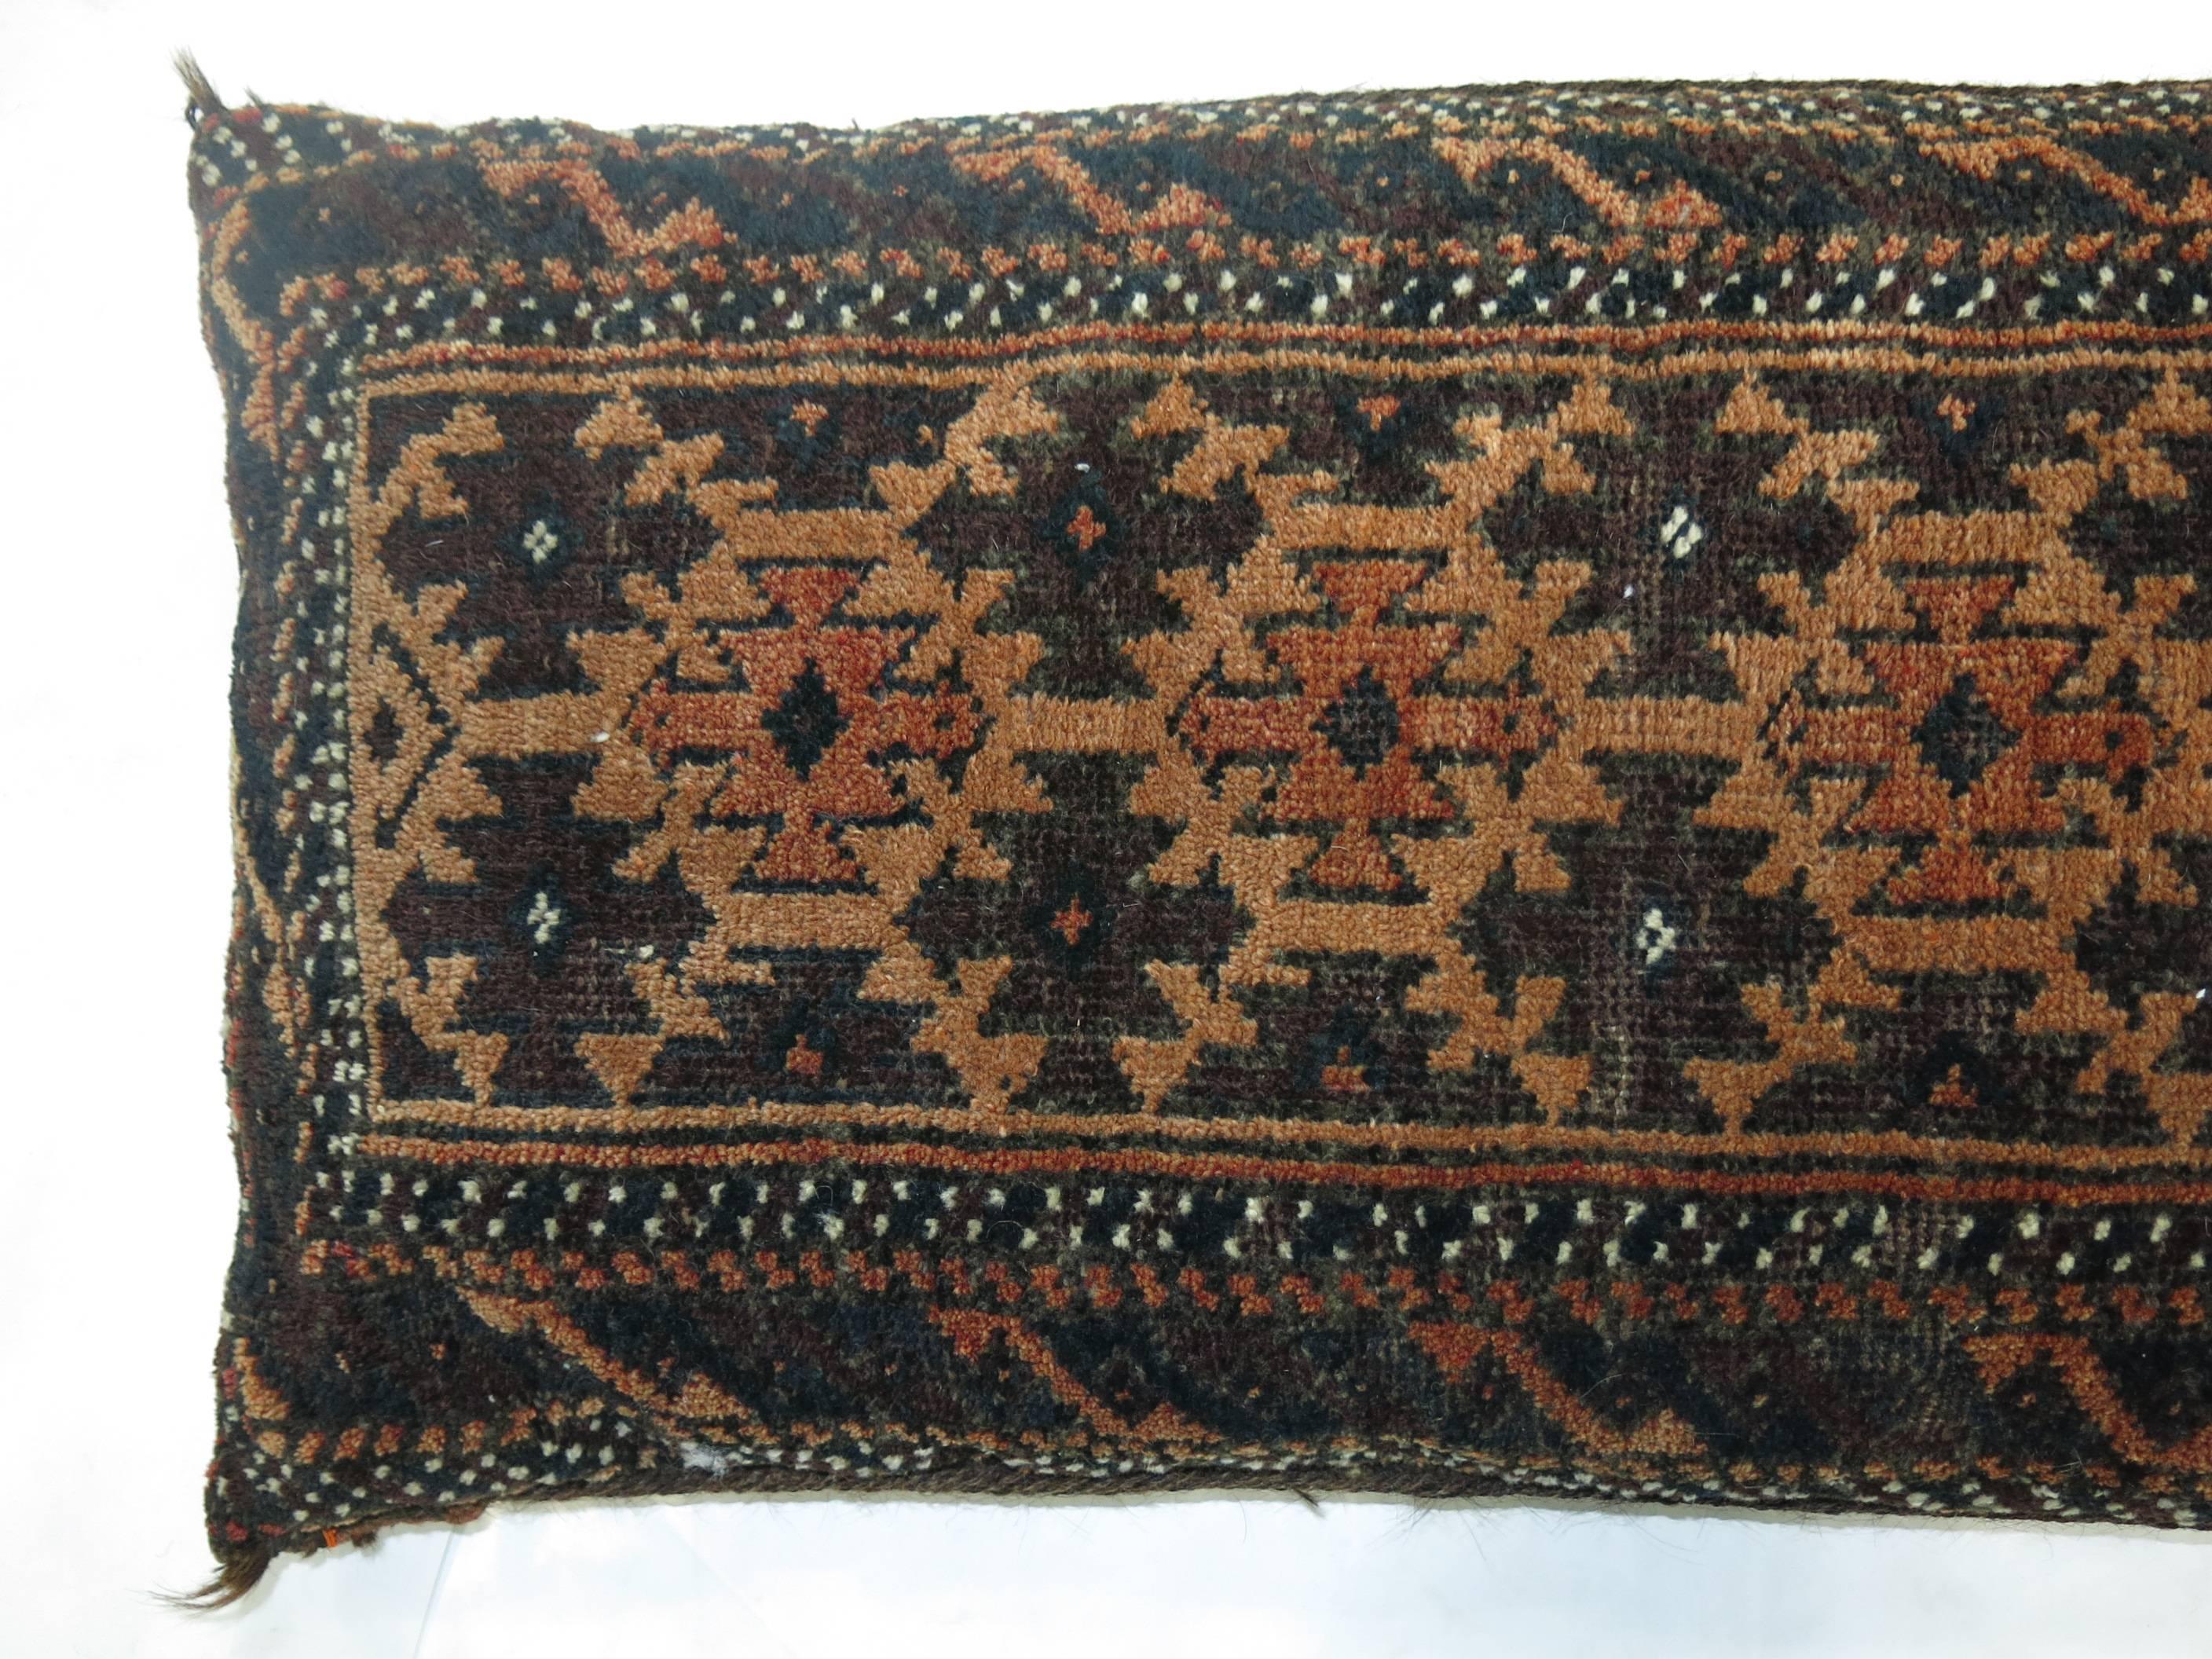 Hand-Woven Rustic Tribal Floor Rug Pillow